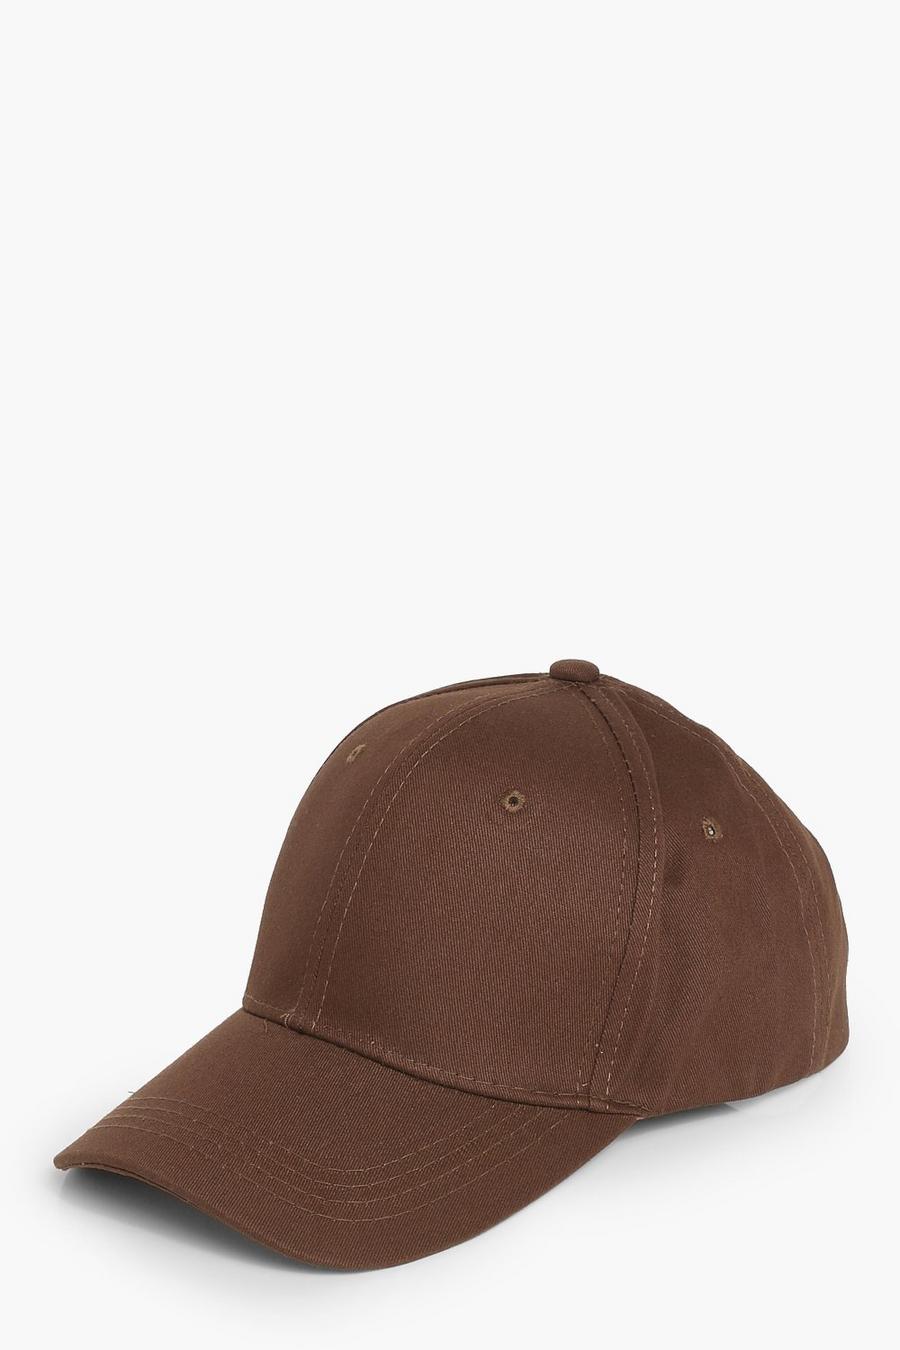 שוקולד marrone כובע בייסבול ארוג